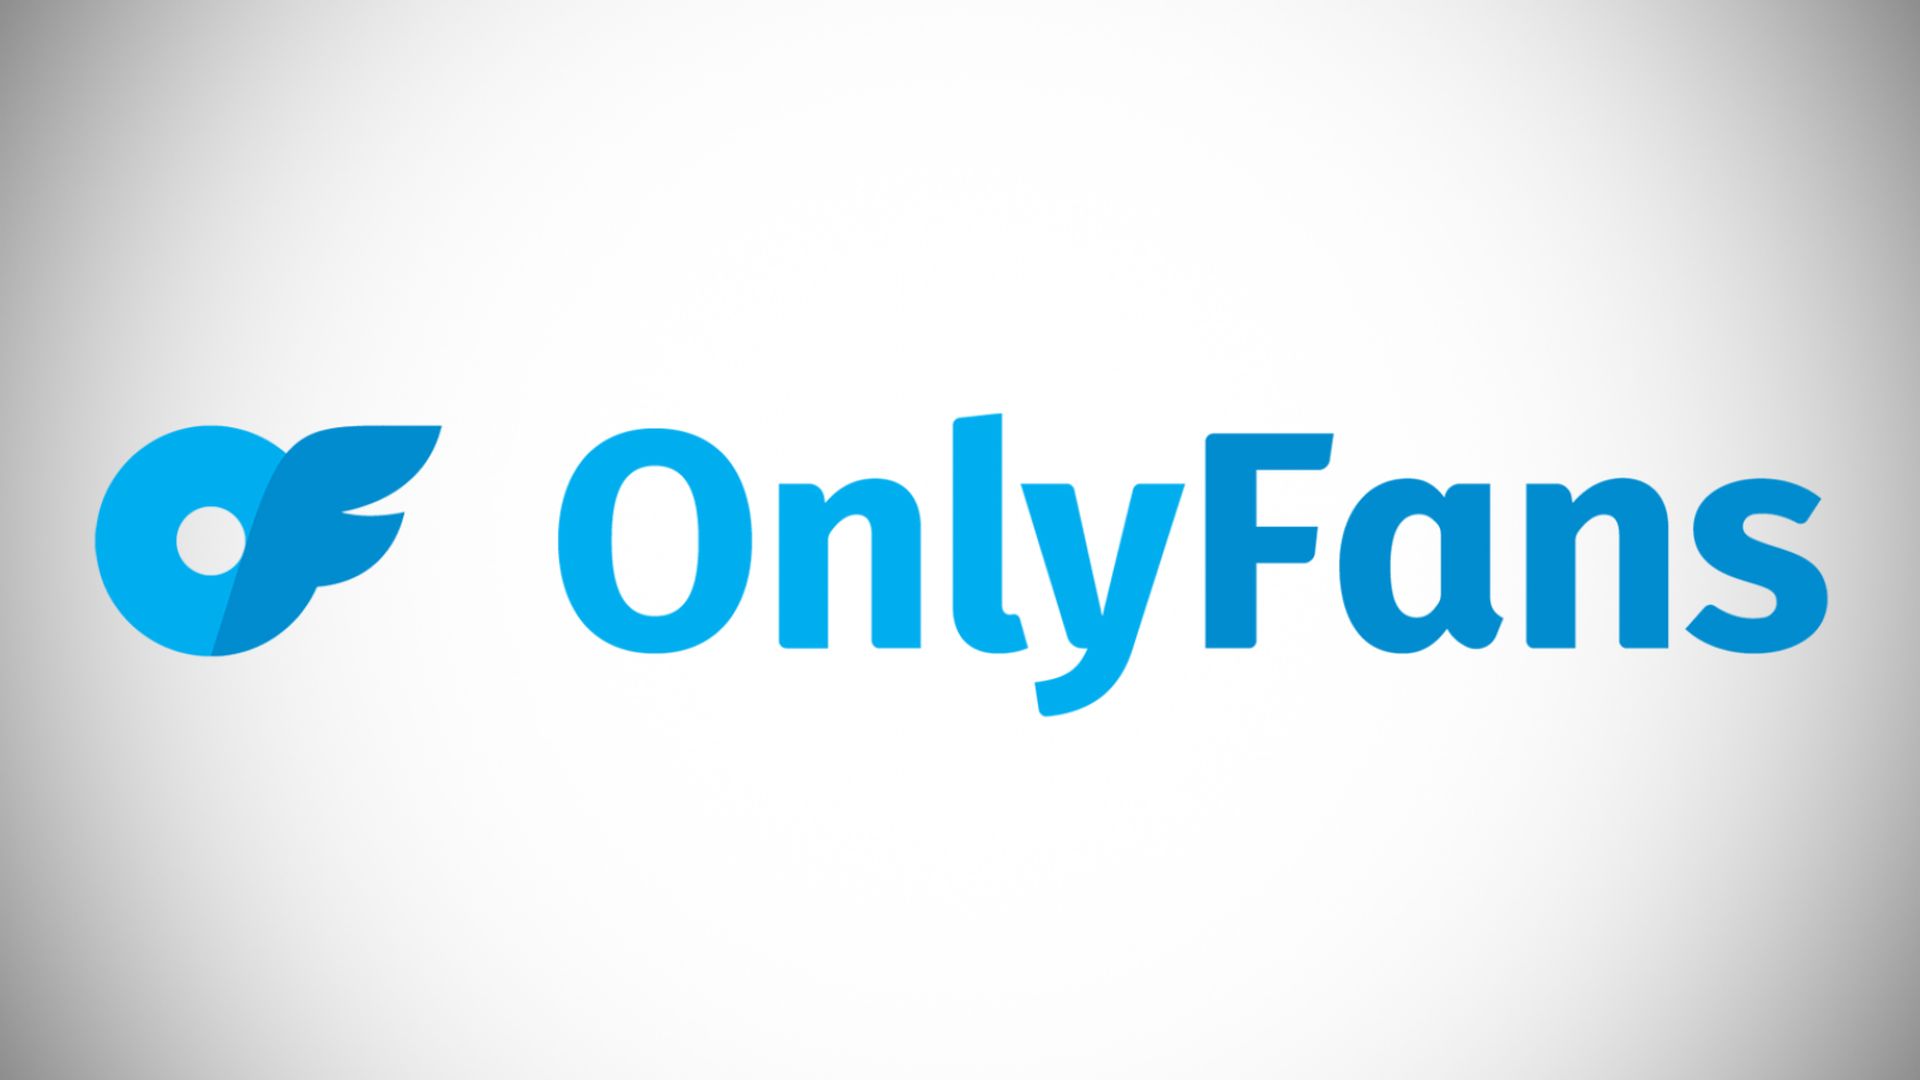 In questo articolo, tratteremo come trovare persone su Onlyfans per posizione, e-mail, nome, social media, interesse e nome utente.